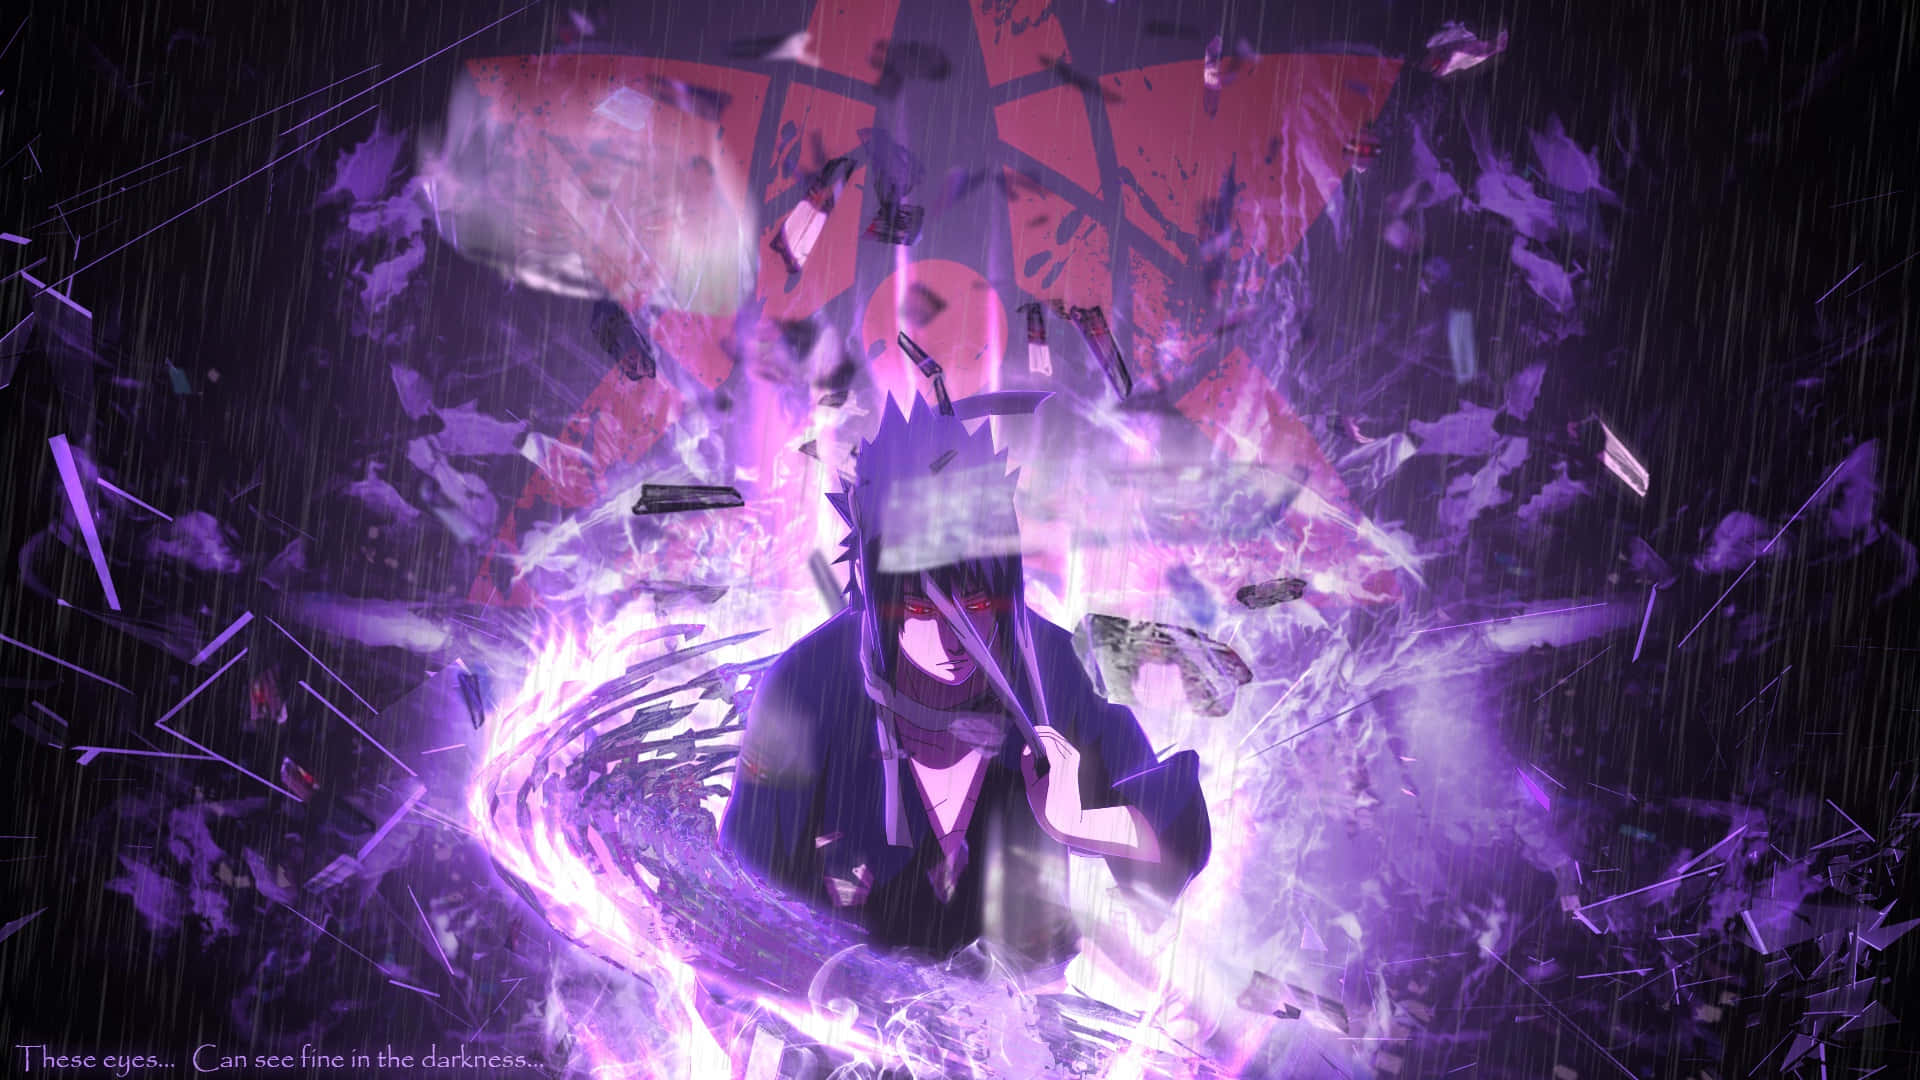 Sasukeuchiha, Un Shinobi Poderoso Del Universo De Naruto.